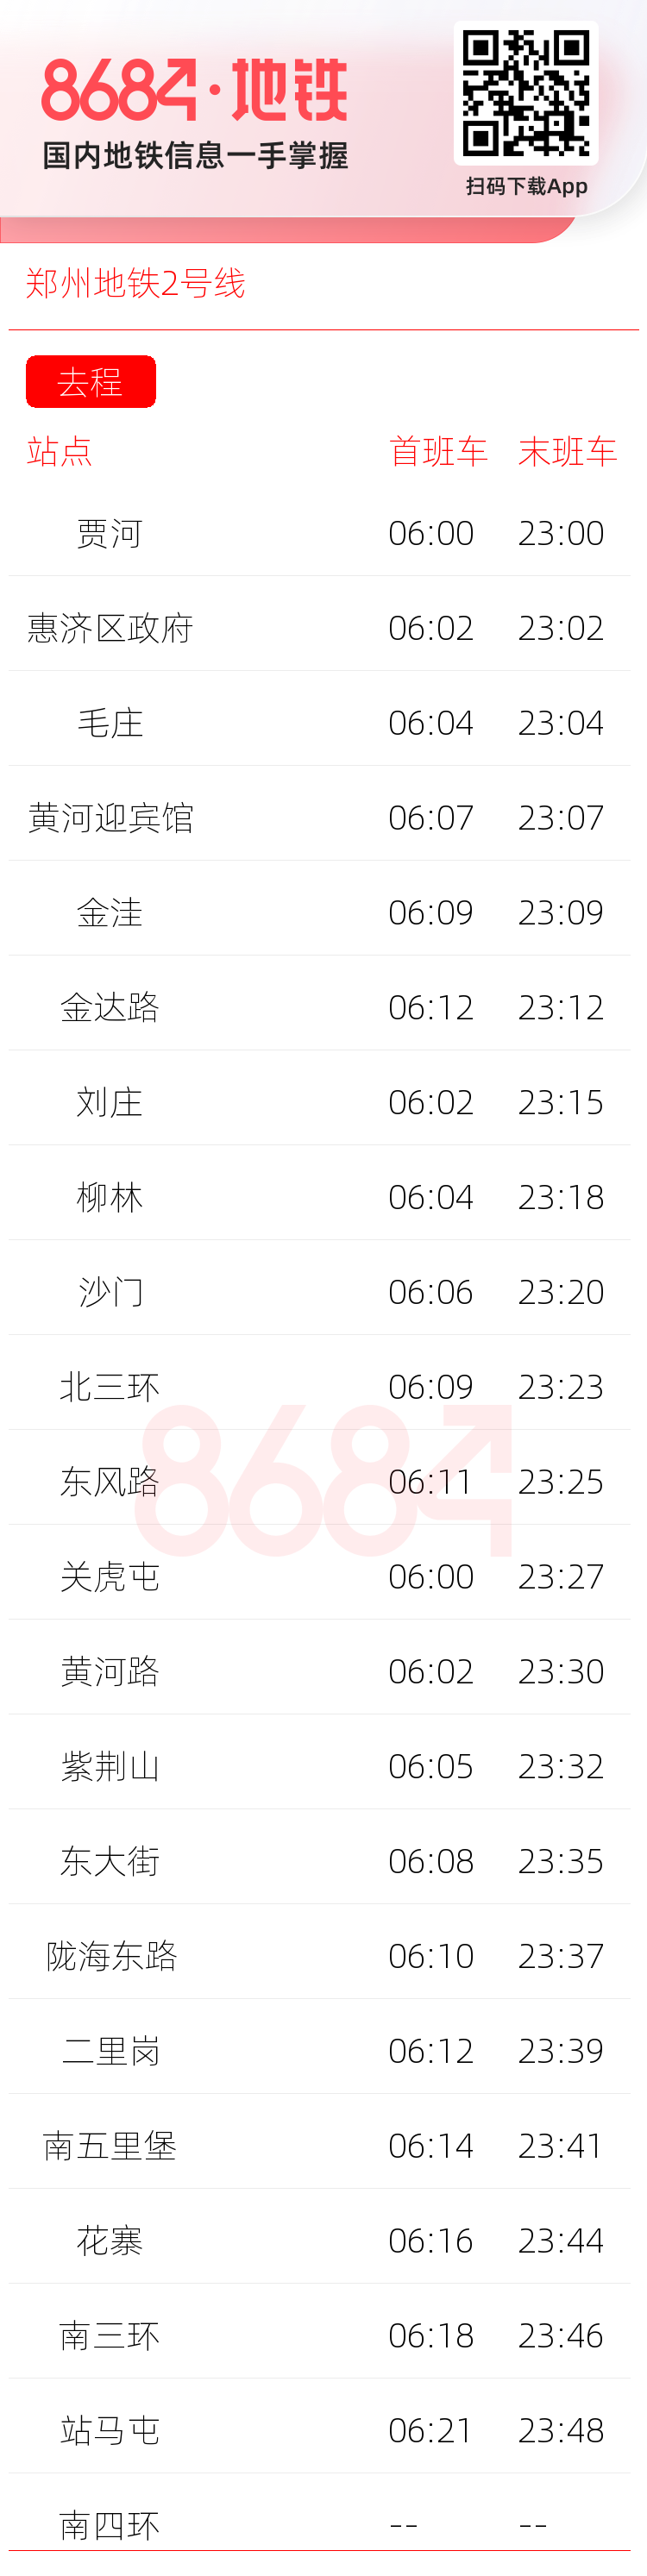 郑州地铁2号线运营时间表